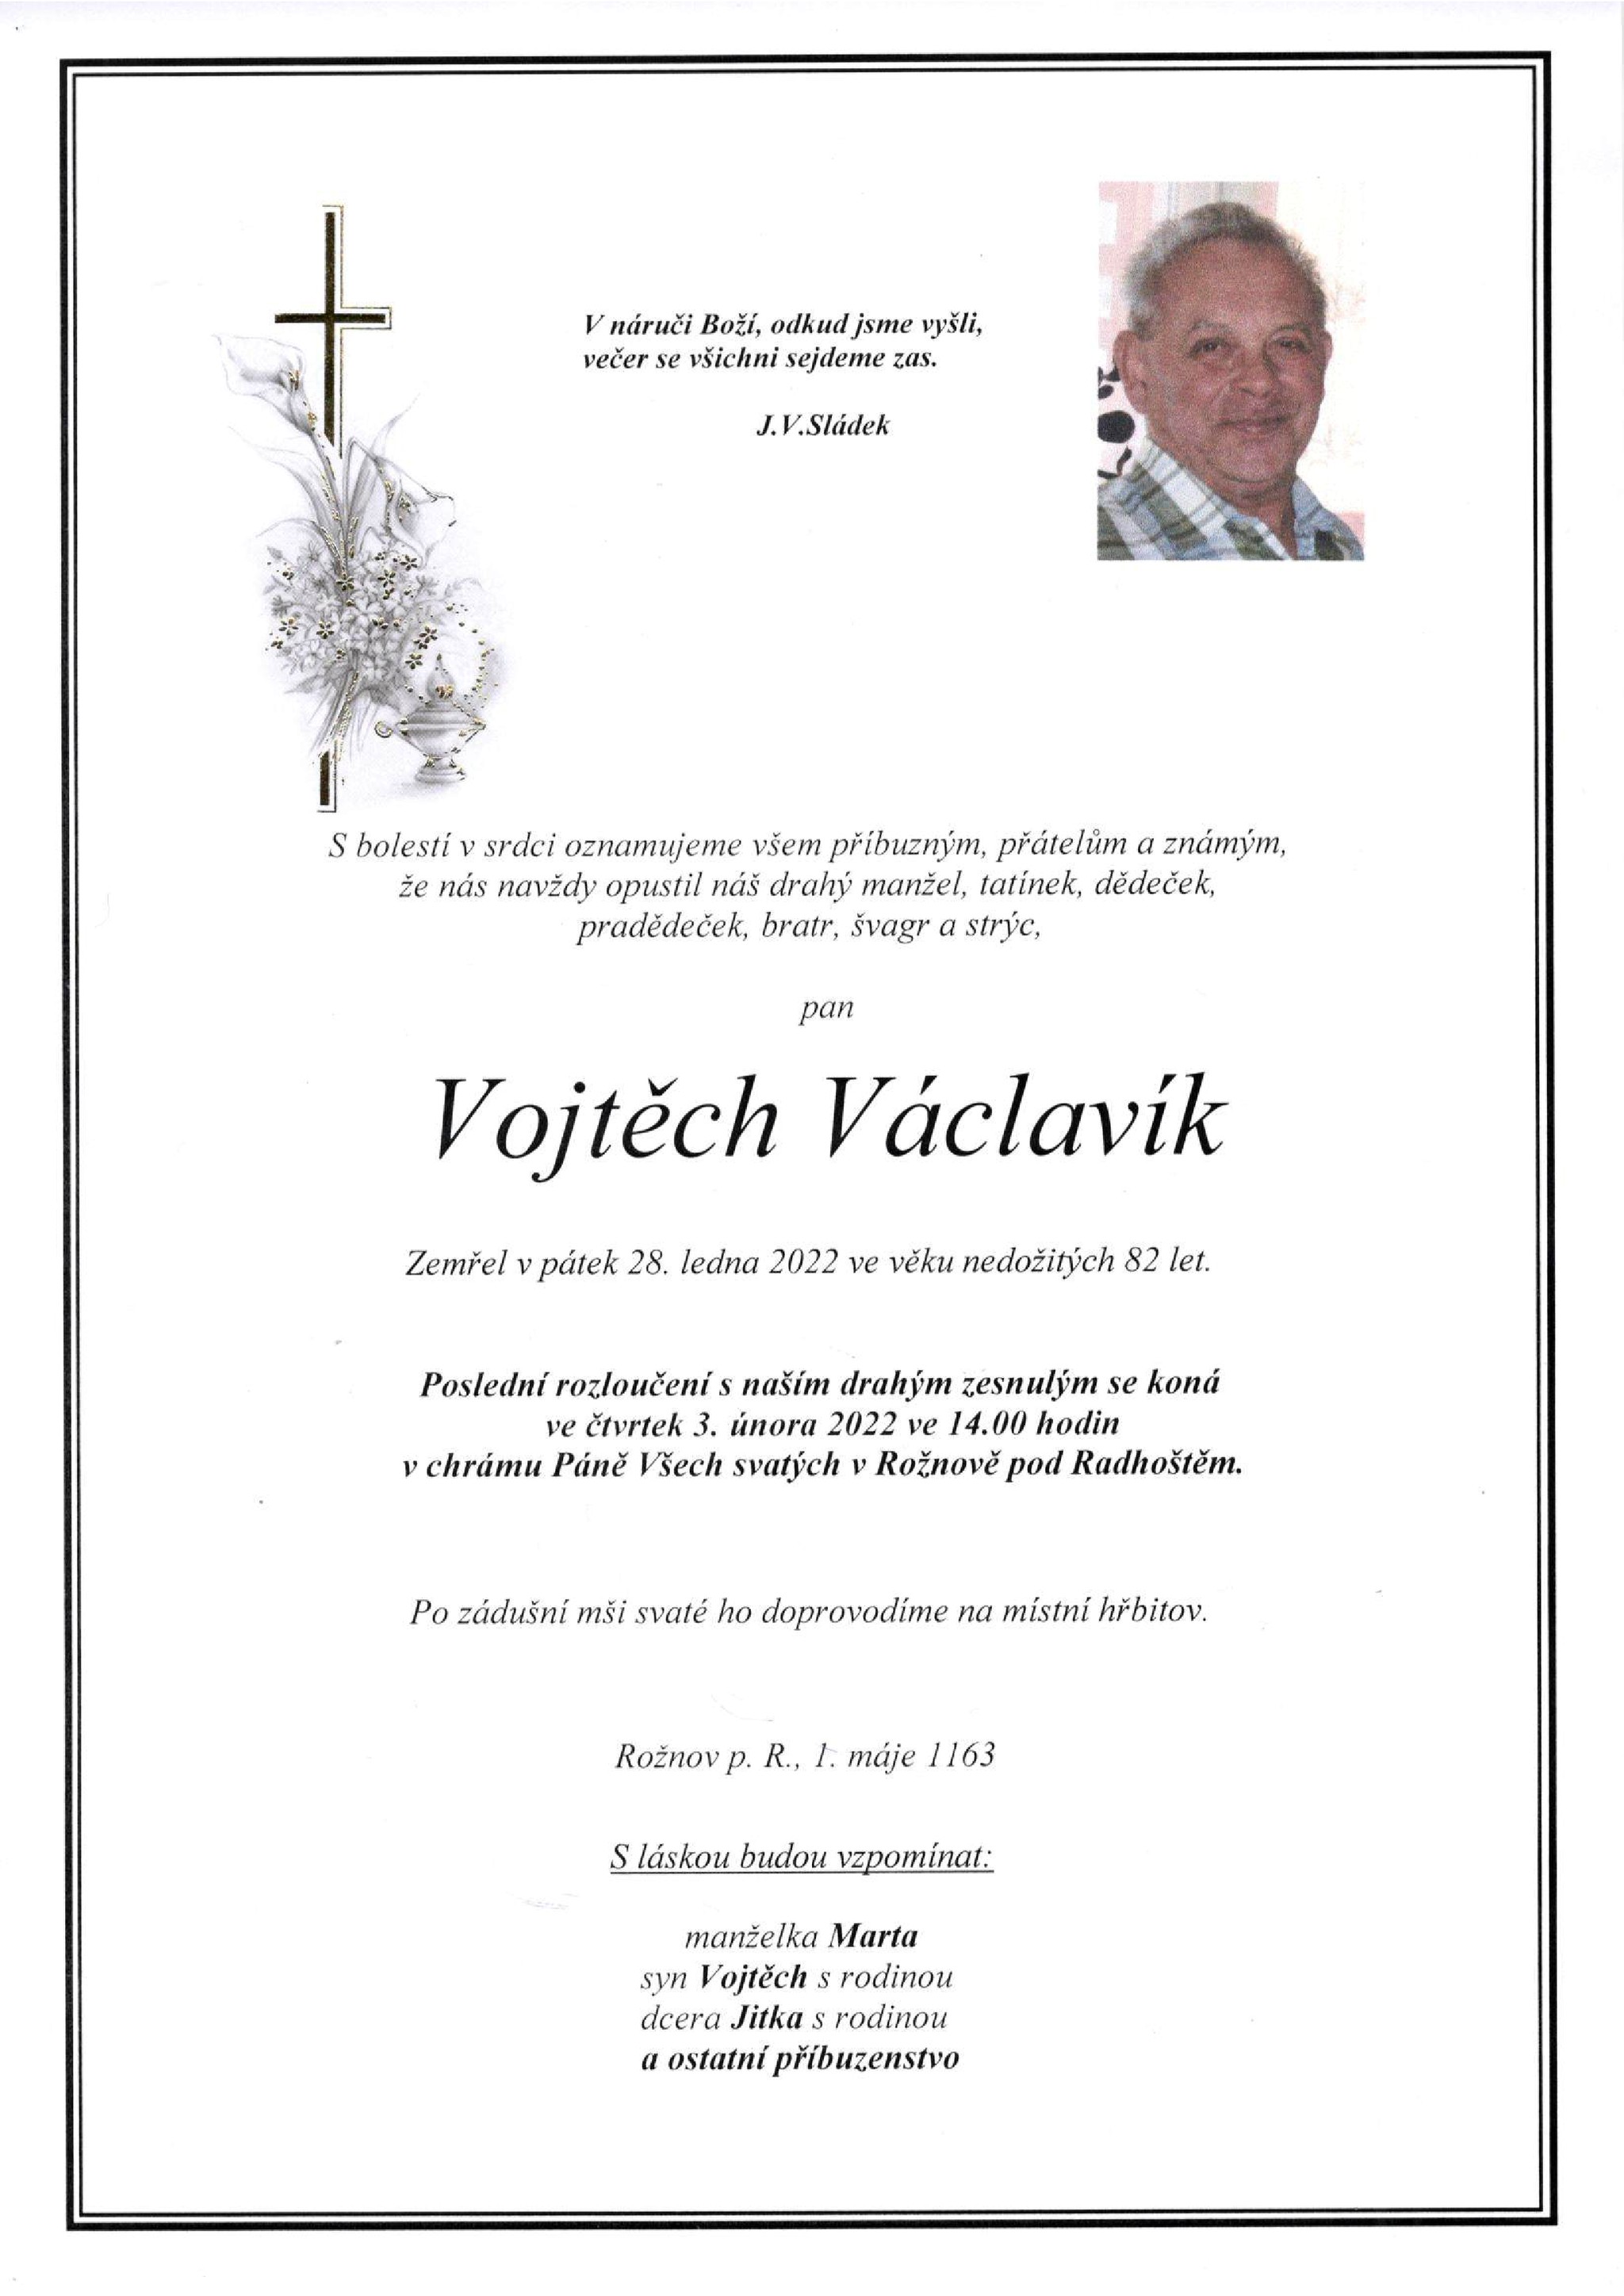 Vojtěch Václavík